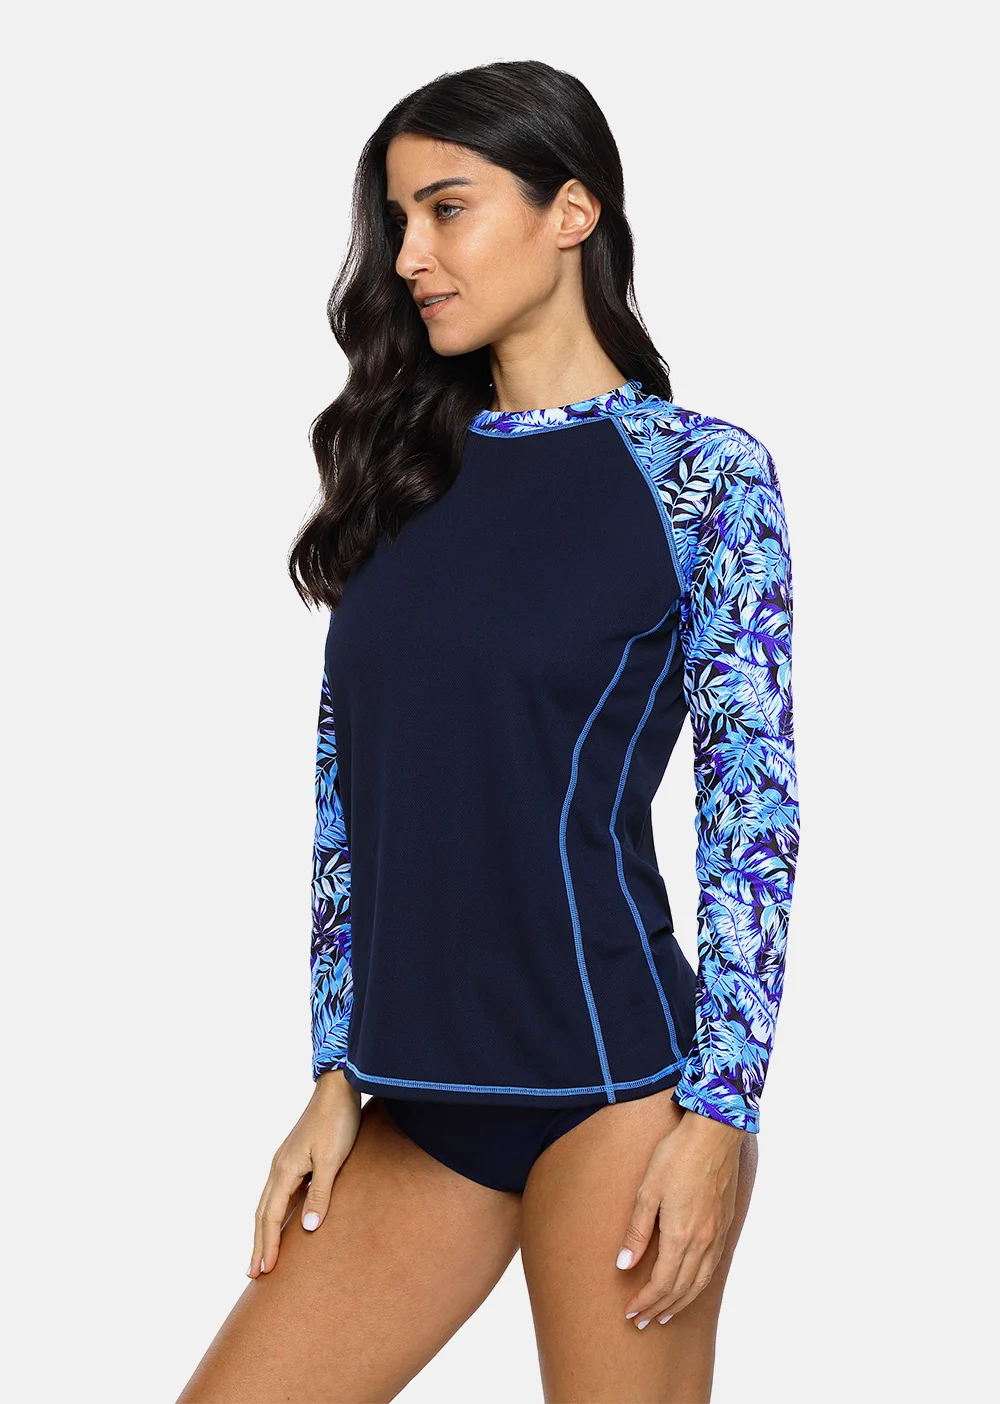 Charmo женский Рашгард с длинным рукавом ретро цветочный принт быстросохнущая рубашка для серфинга Топ походные рубашки Рашгард UPF50+ футболки